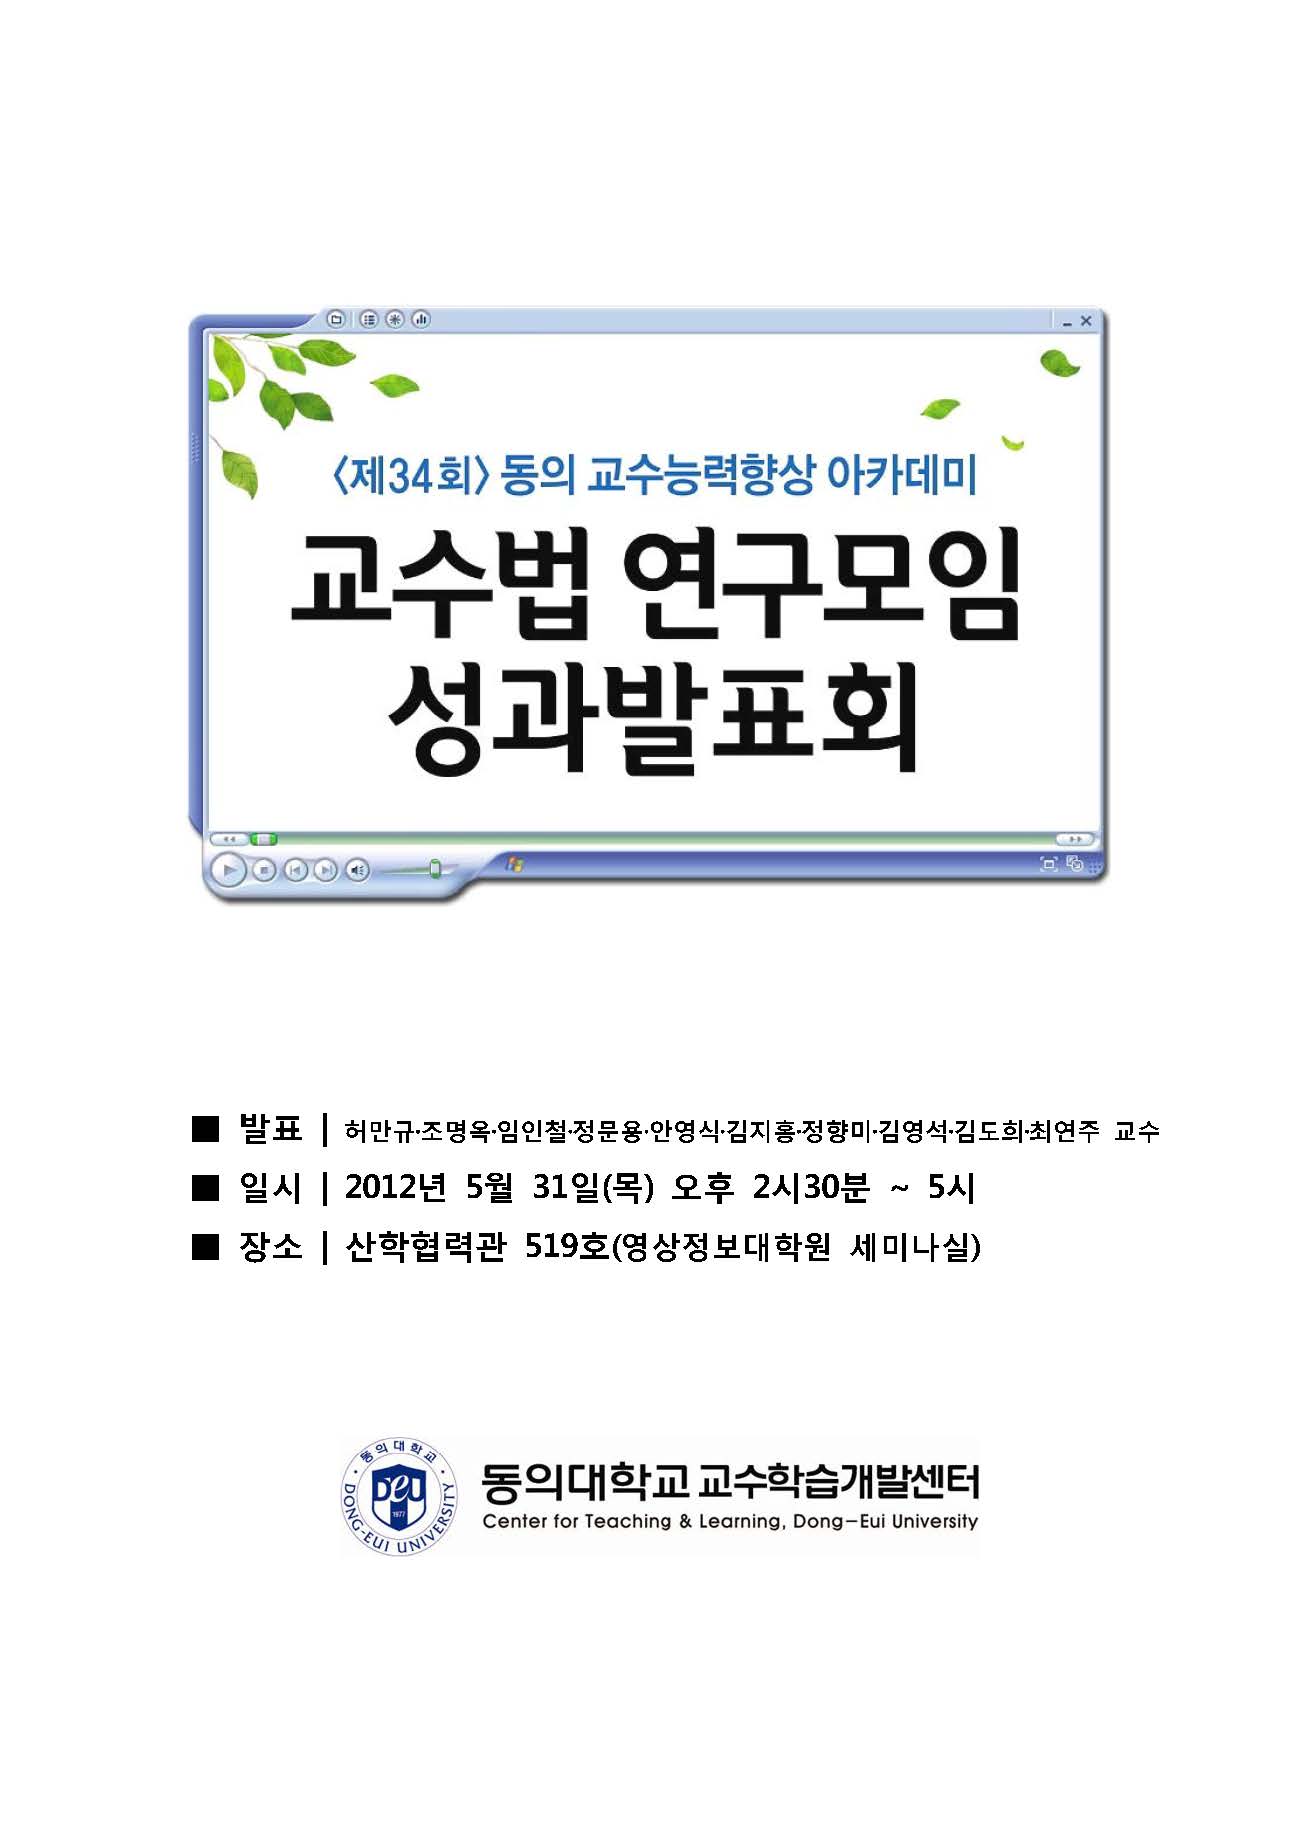 페이지_ 제34회_동의교수능력향상.jpg